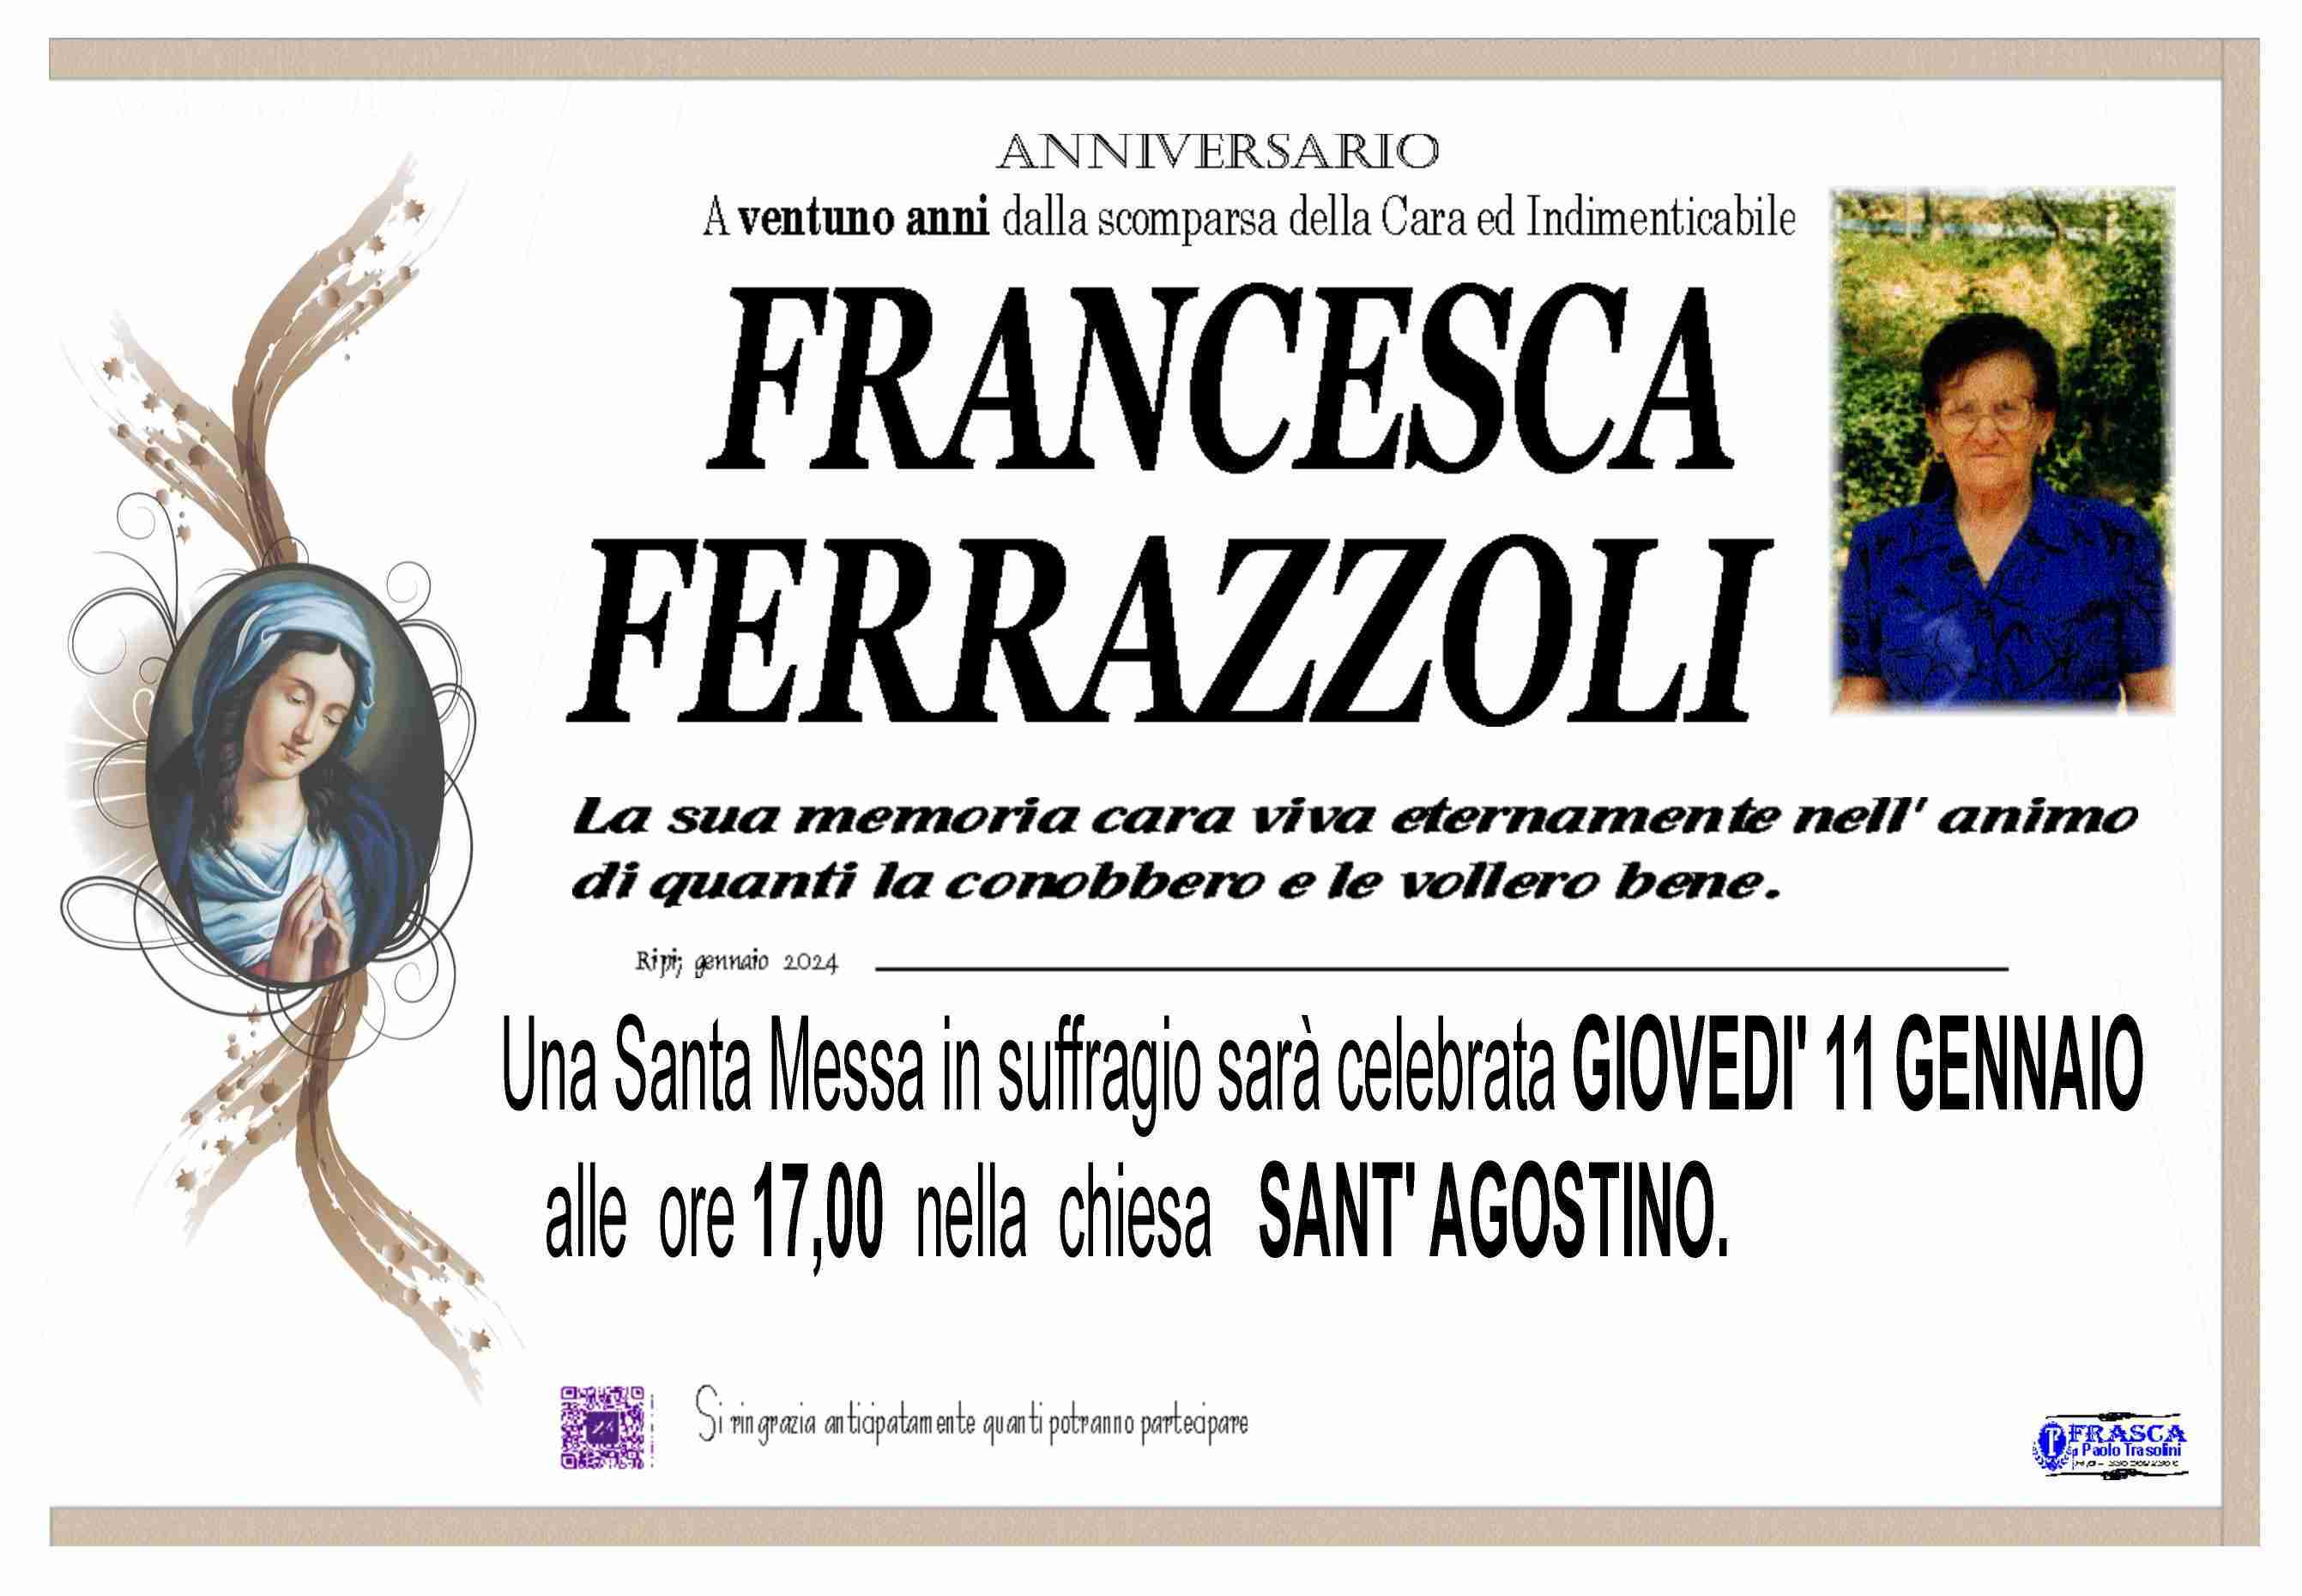 Francesca Ferrazzoli